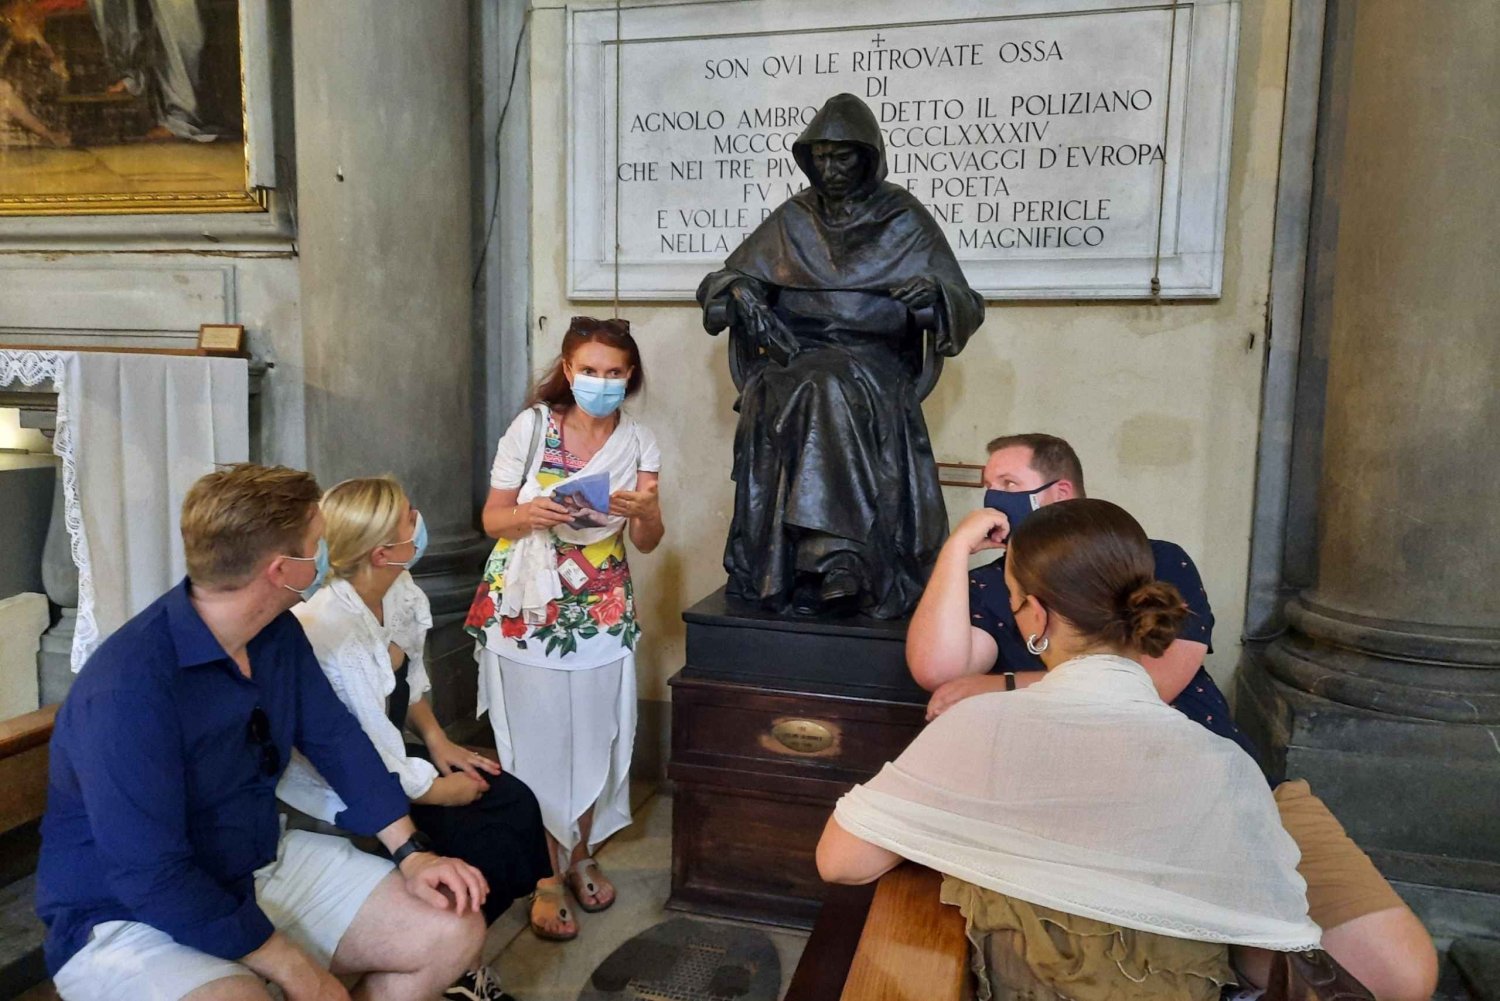 Firenze: Okkultismin ja esoteerismin kävelykierros uteliaille